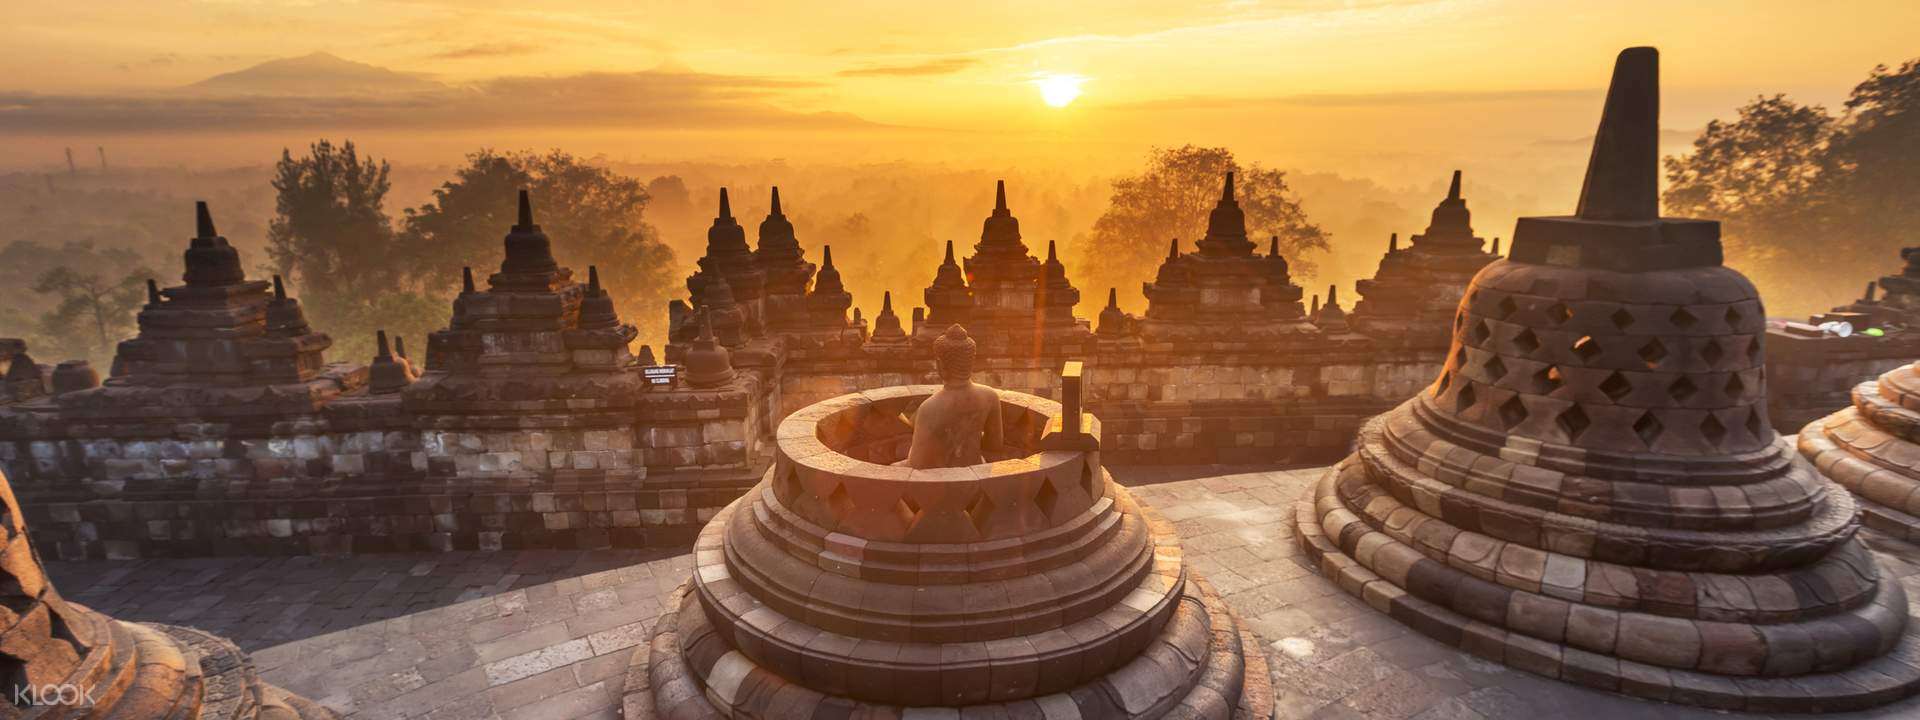 Paket Wisata Jogja Borobudur Prambanan